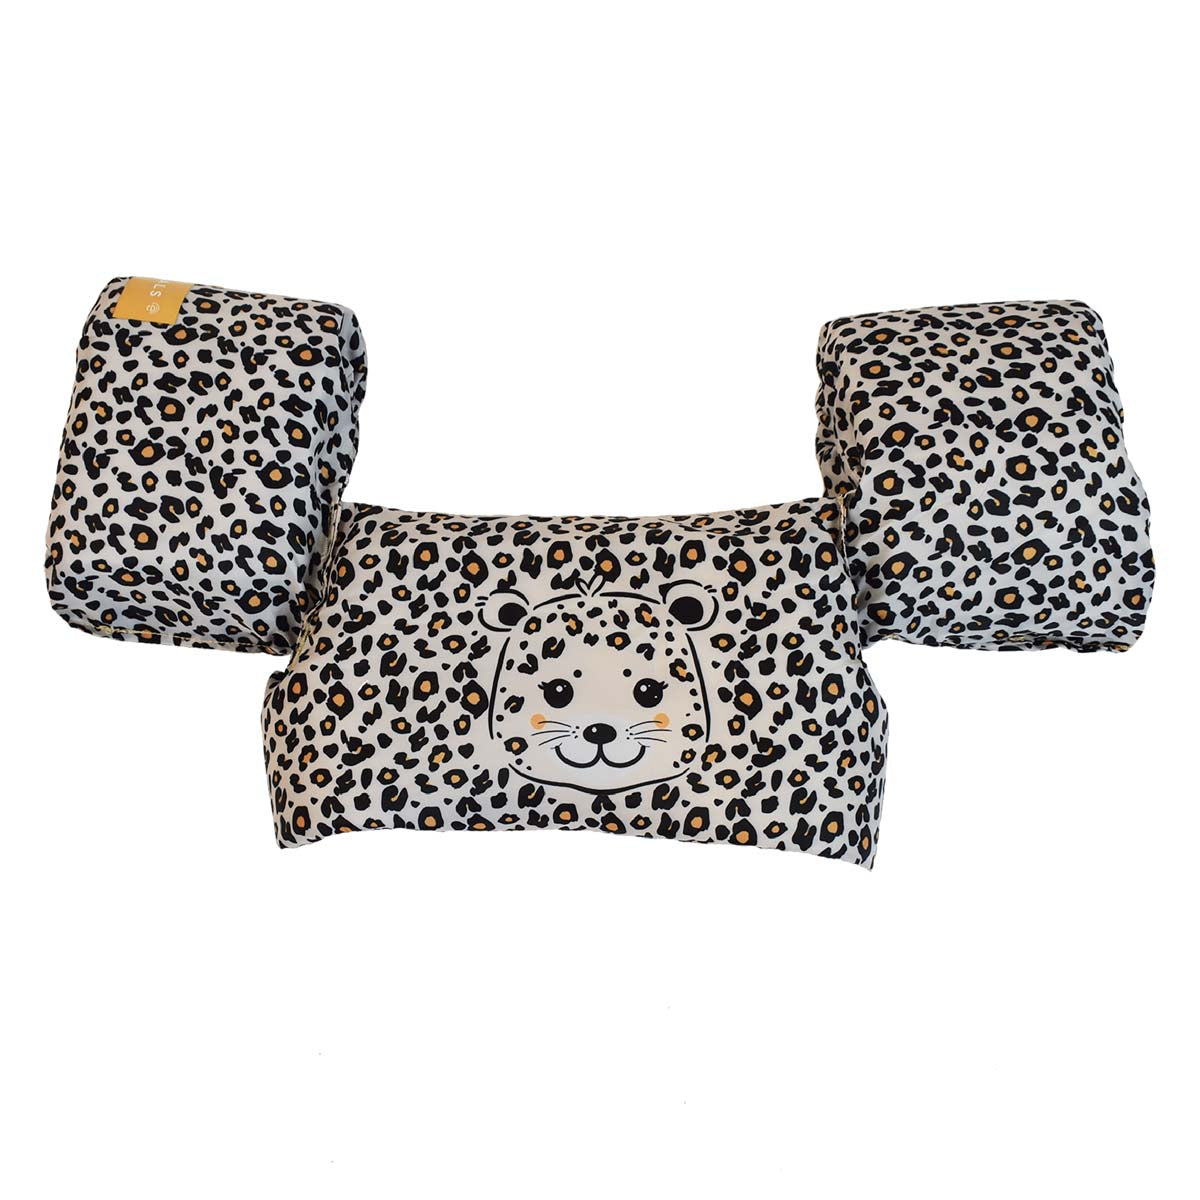 De Swim Essentials puddle jumper beige leopard is het perfecte alternatief wanneer je kindje niet van zwembandjes houdt. De puddle jumper zorgt ervoor dat je kindje beschermd is en lekker kan zwemmen. VanZus.